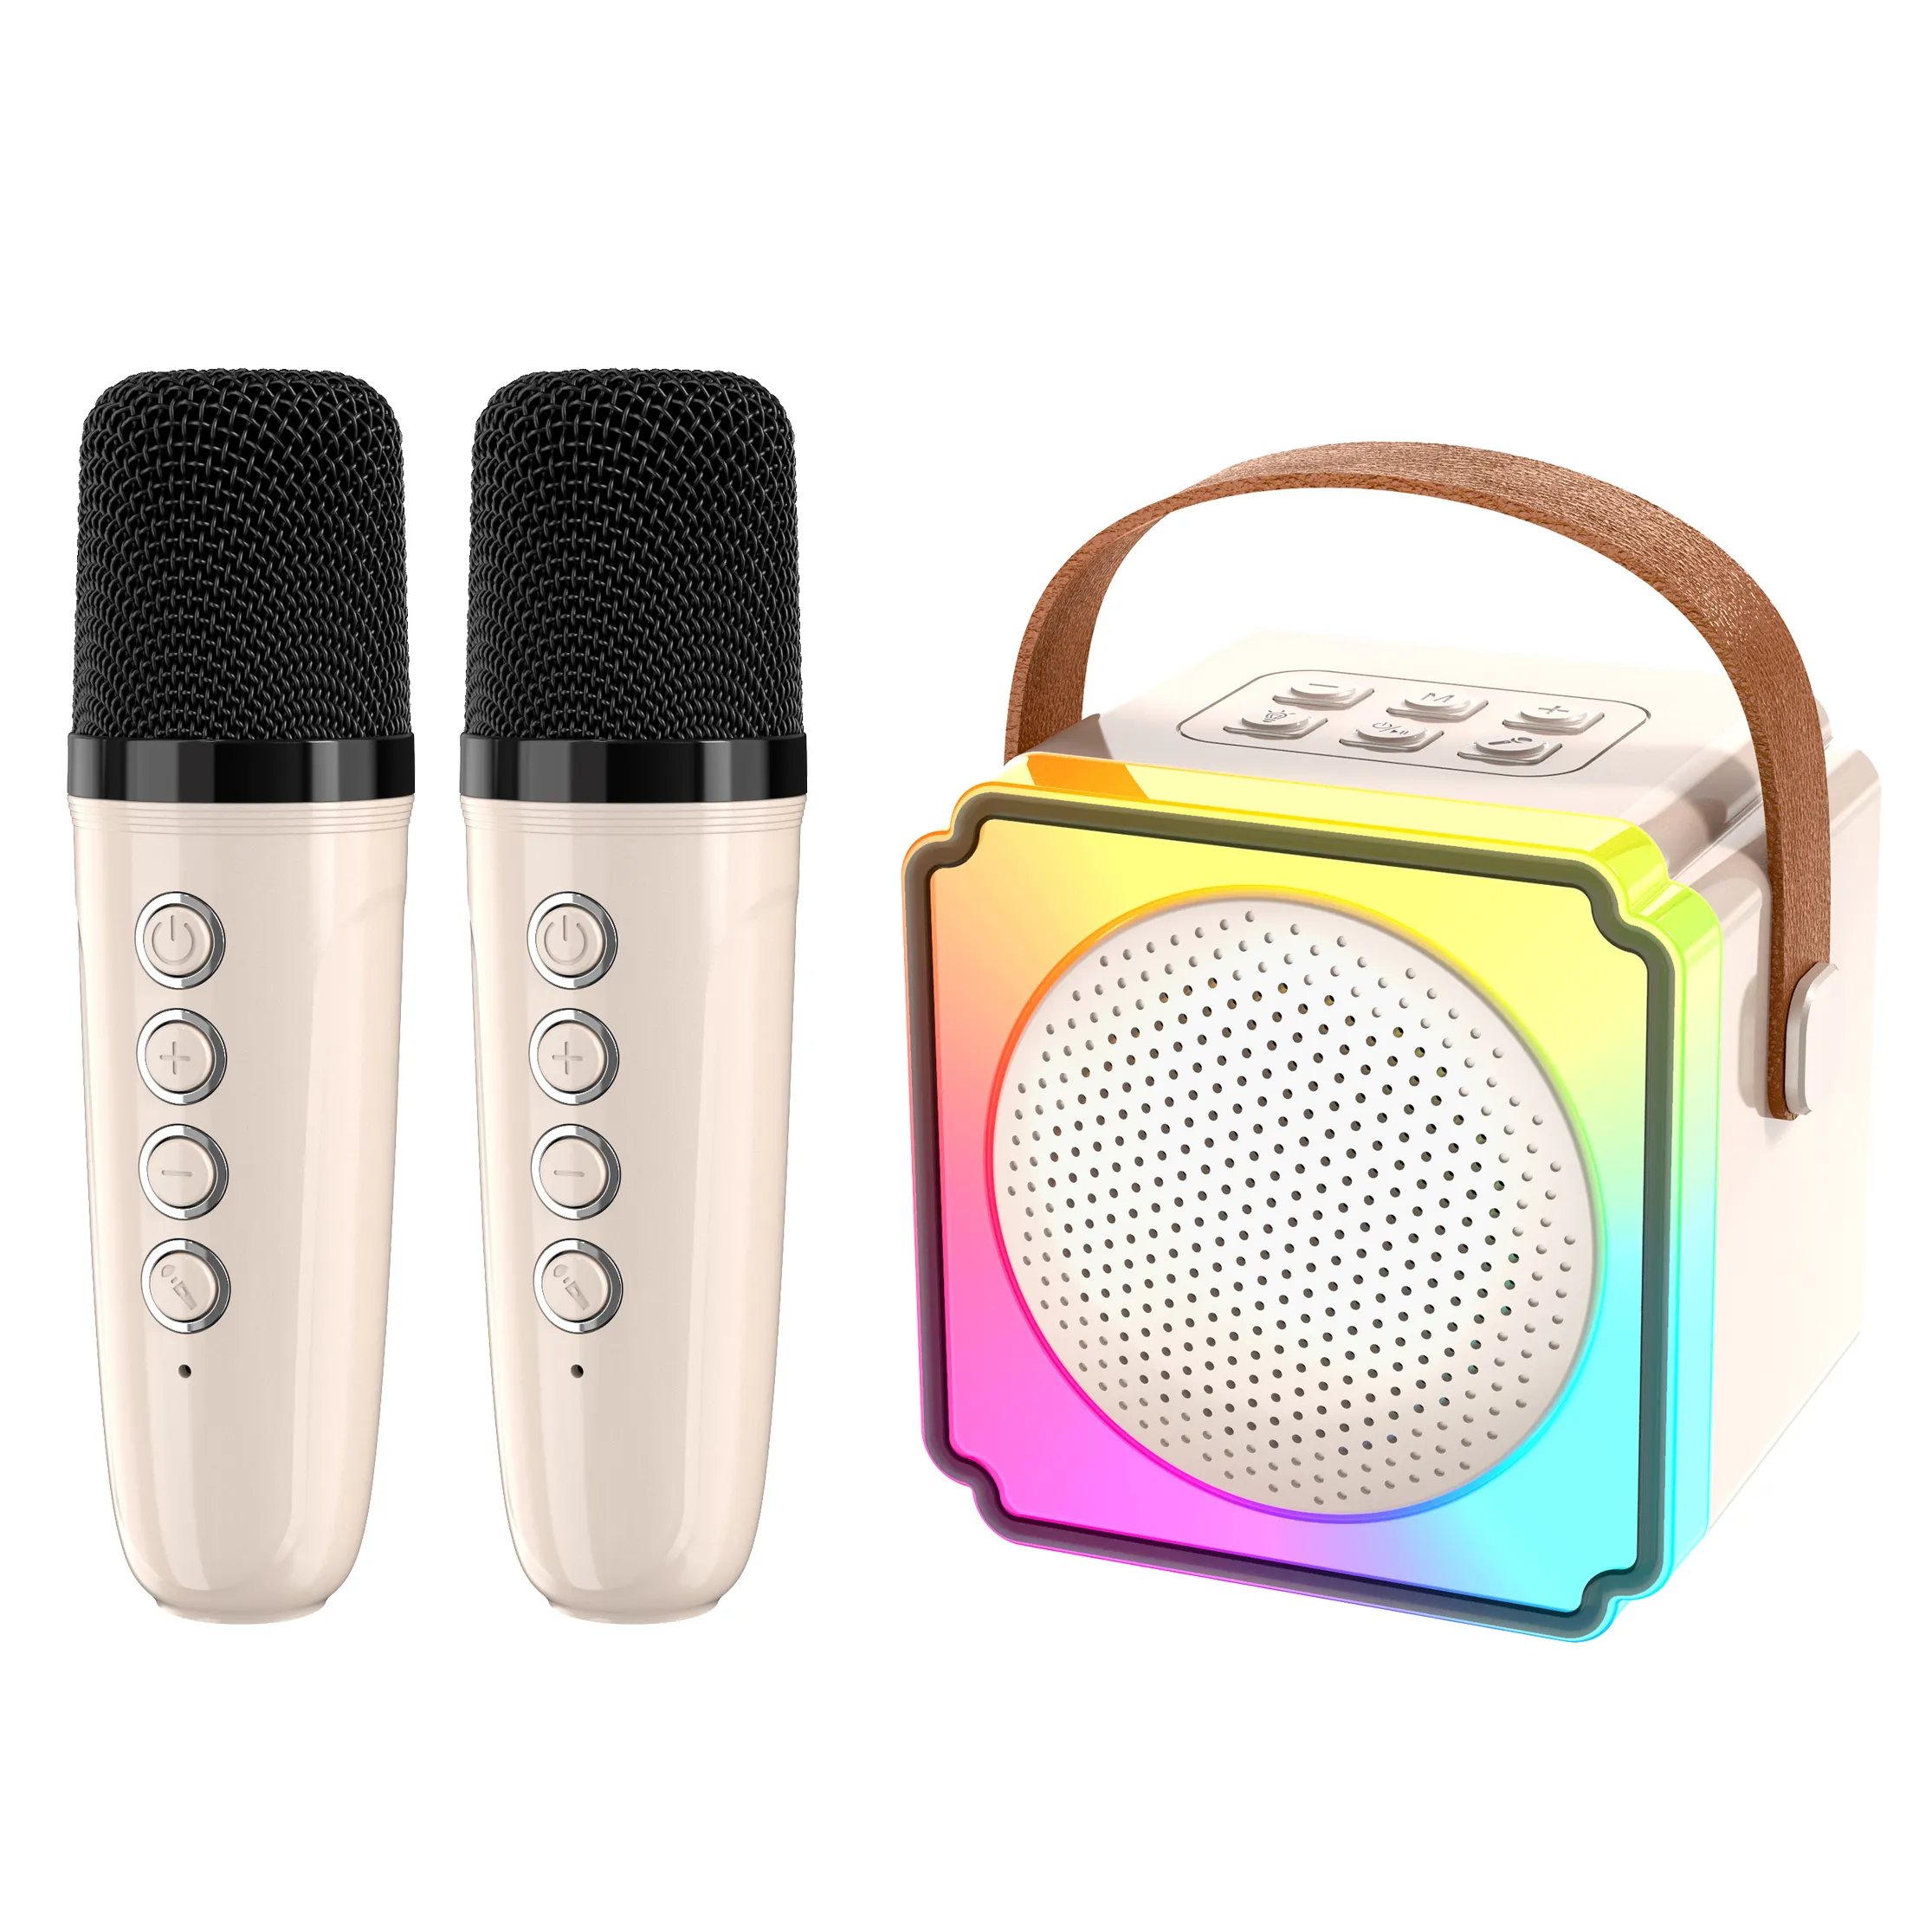 Portátil inteligente música Bluetooth boxeo hogar magia interacción altavoz marcas MINI karaoke máquina con 2 micrófonos inalámbricos